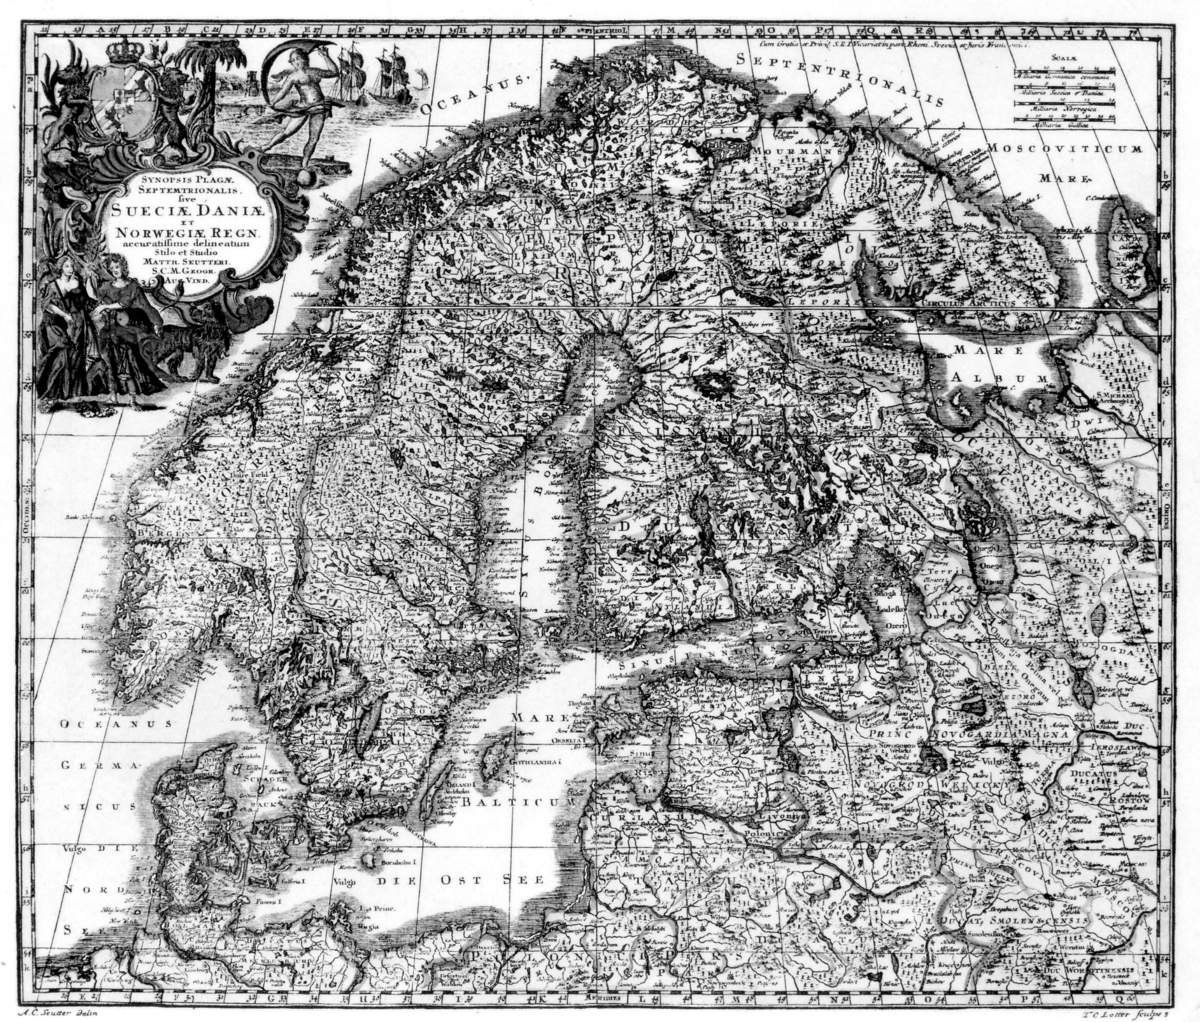 Karta över Sverige/Finland och Danmark/Norge,
reproduktion efter original. I en kartusch uppe i vänstra hörnet står
texten seMRK.